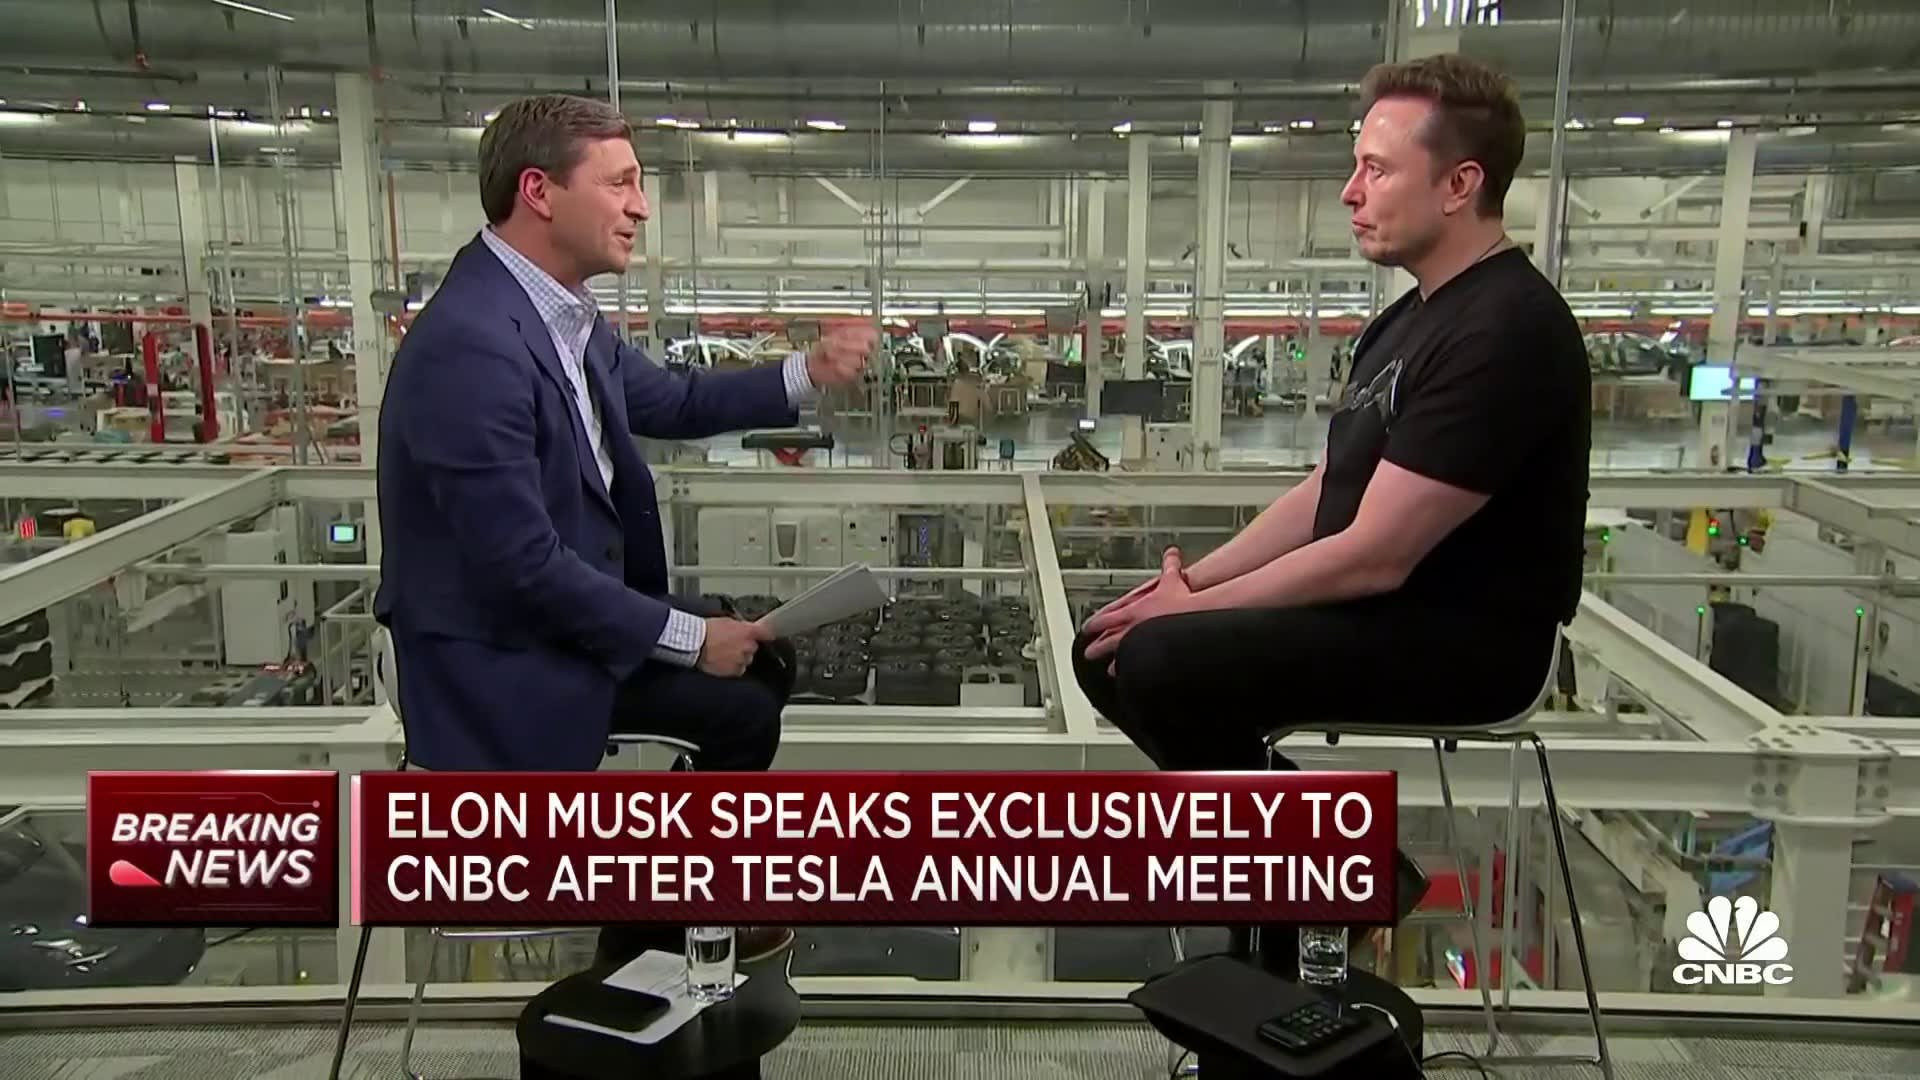 Phỏng vấn Elon Musk: Chỉ nghỉ 2-3 ngày mỗi năm, nói gì mình thích cho dù bị mất tiền và quyết định sẽ 'hạ mình' chi tiền quảng cáo xe Tesla - Ảnh 2.